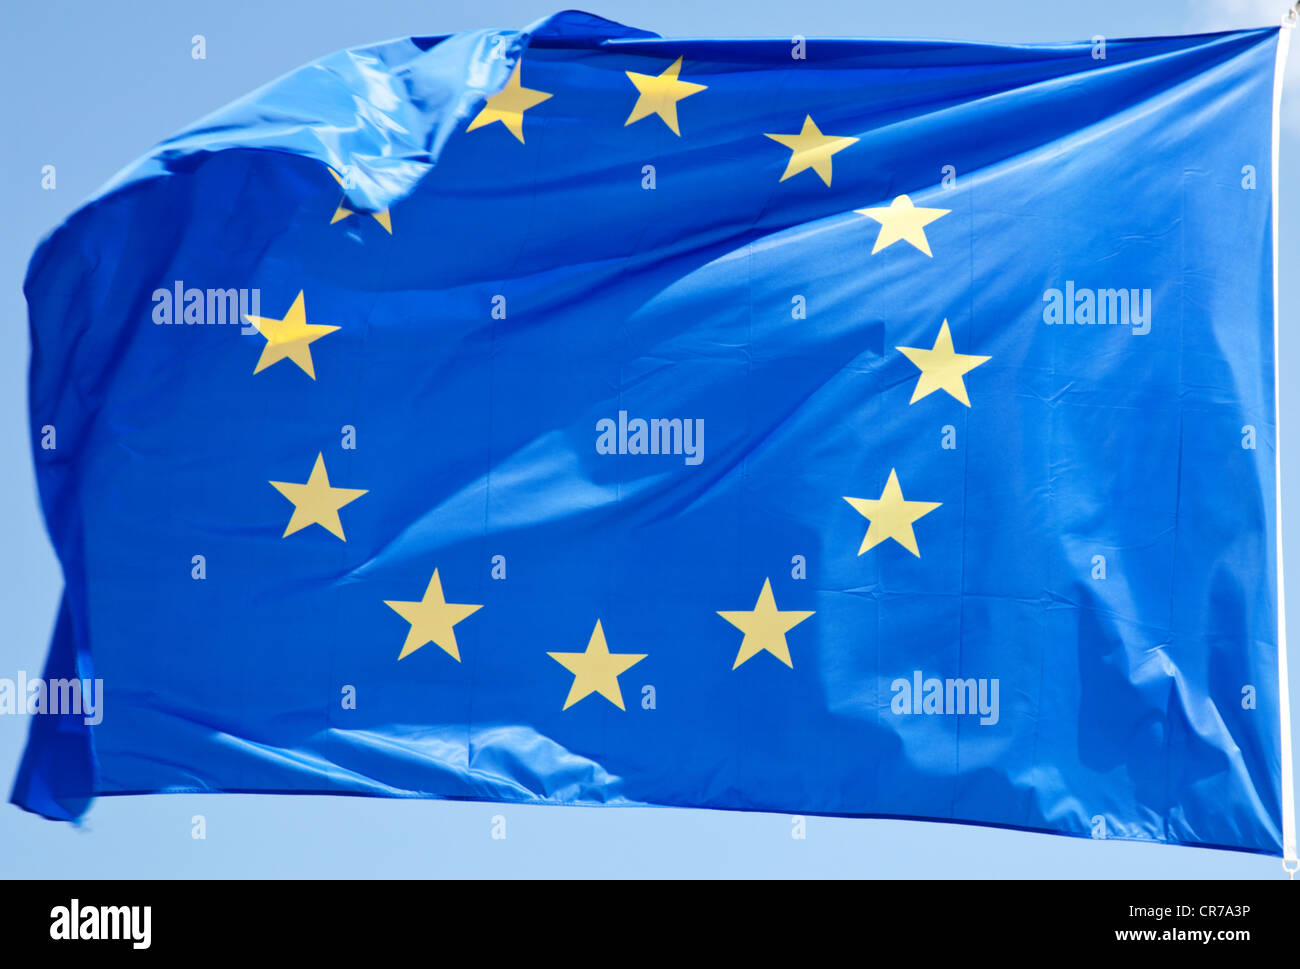 Waving flag of the European Union. Stock Photo